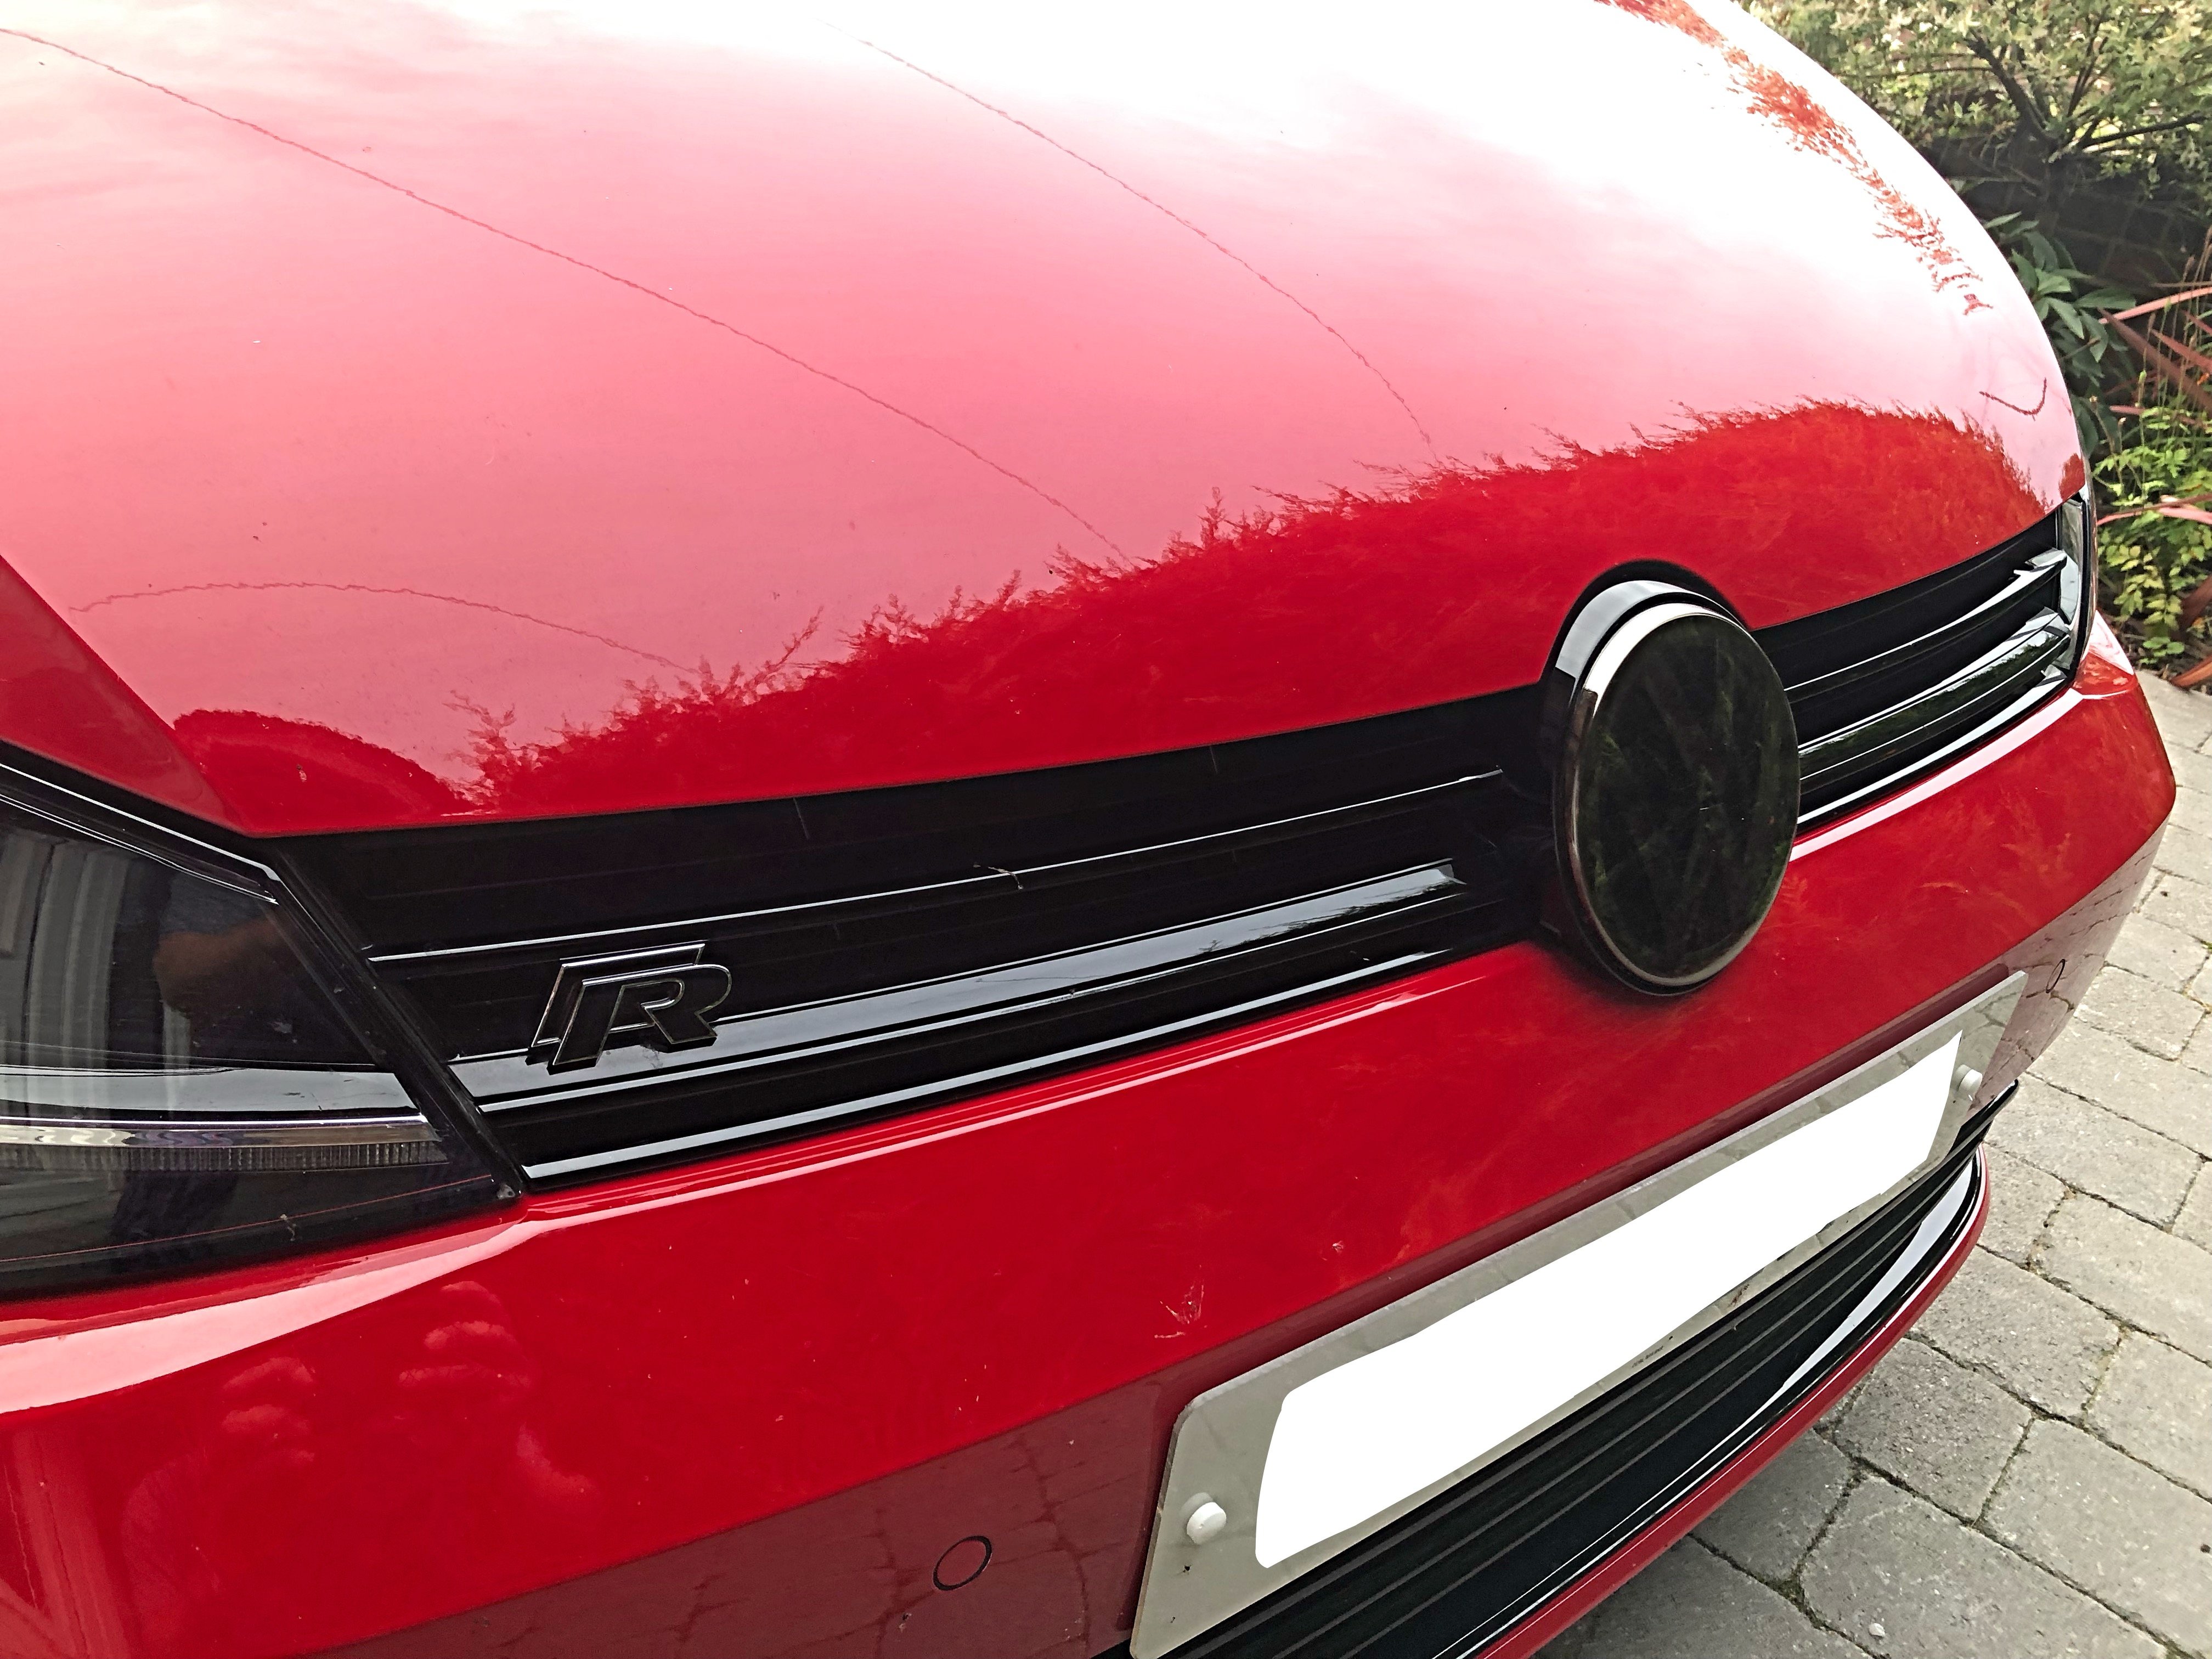 VW Embleme schwarz machen trotz ACC? - Aerodynamik Golf 7 R - Volkswagen R  Forum